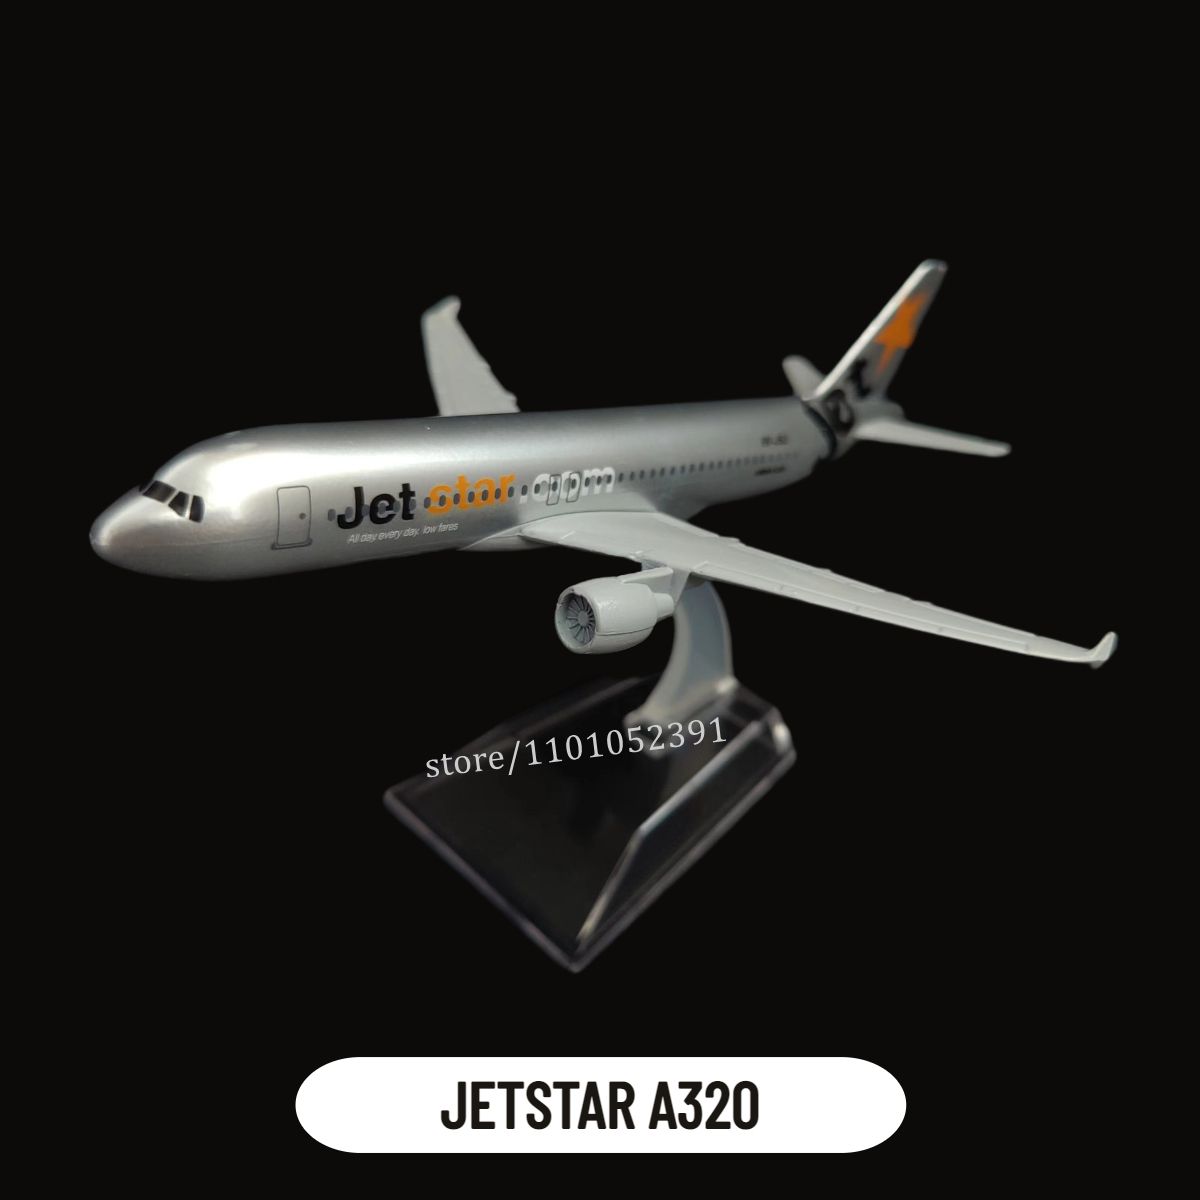 43.Jetstar A320